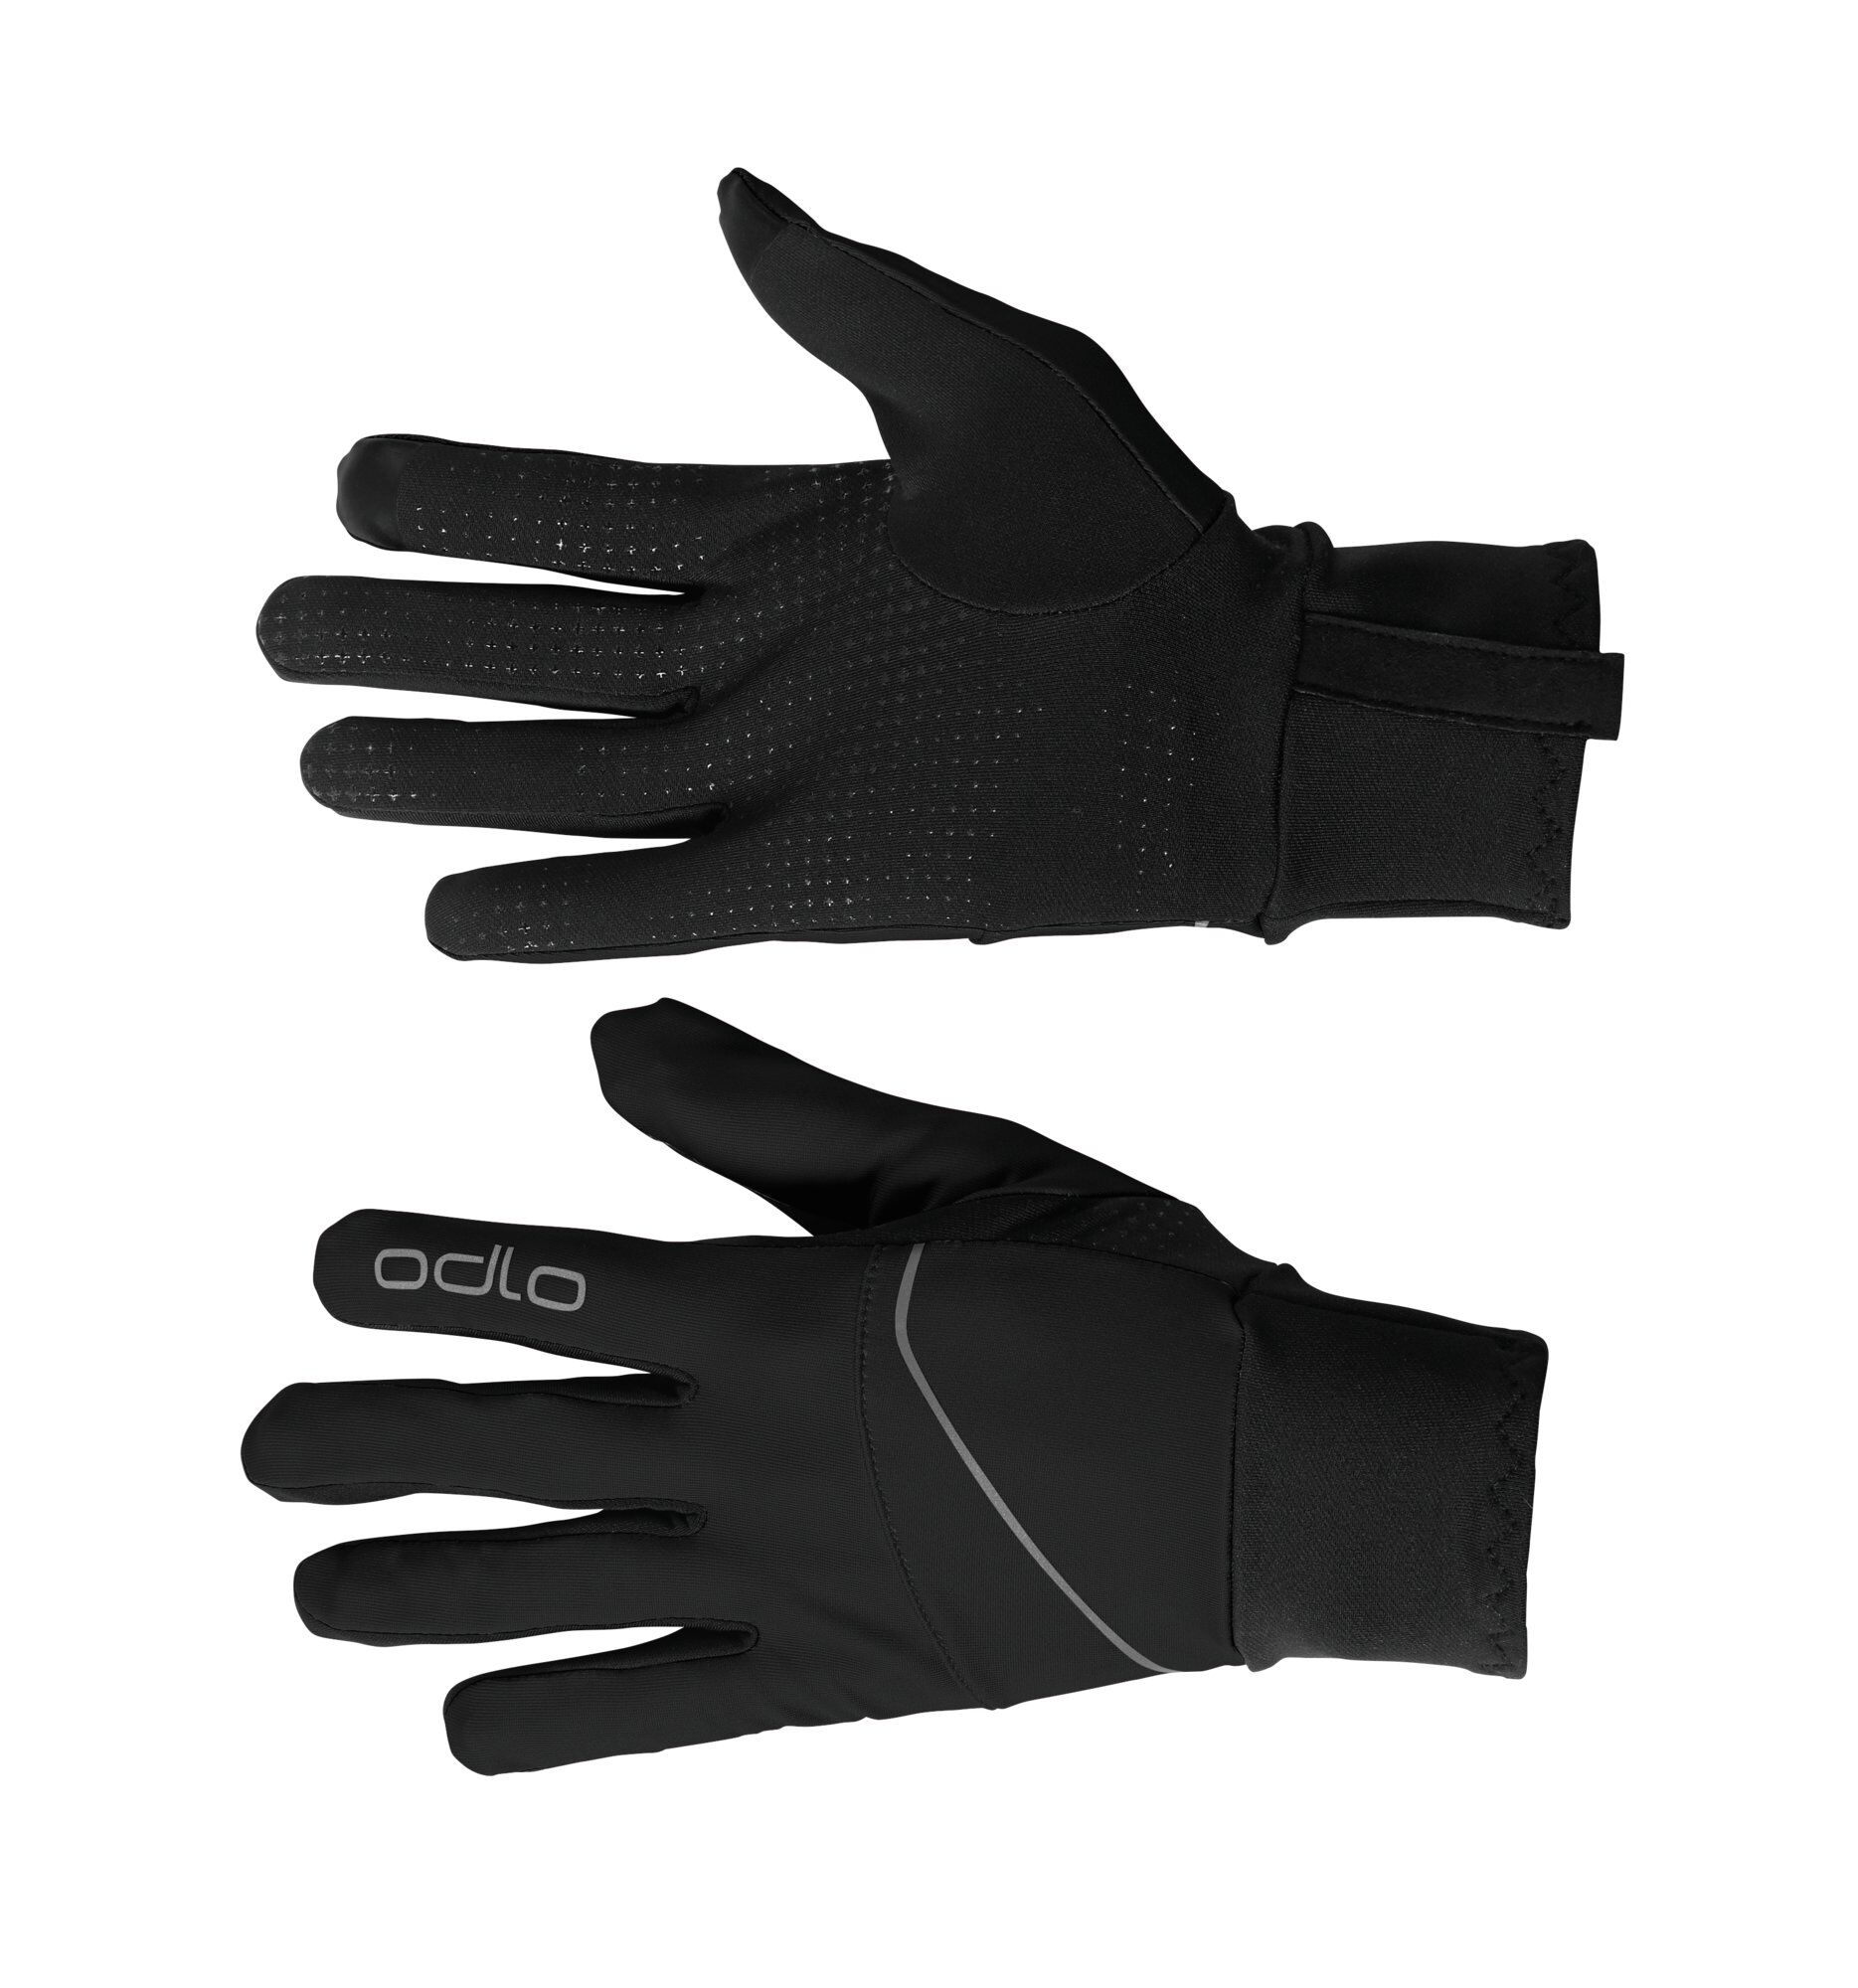 Odlo Intensity Safety Light - Gloves